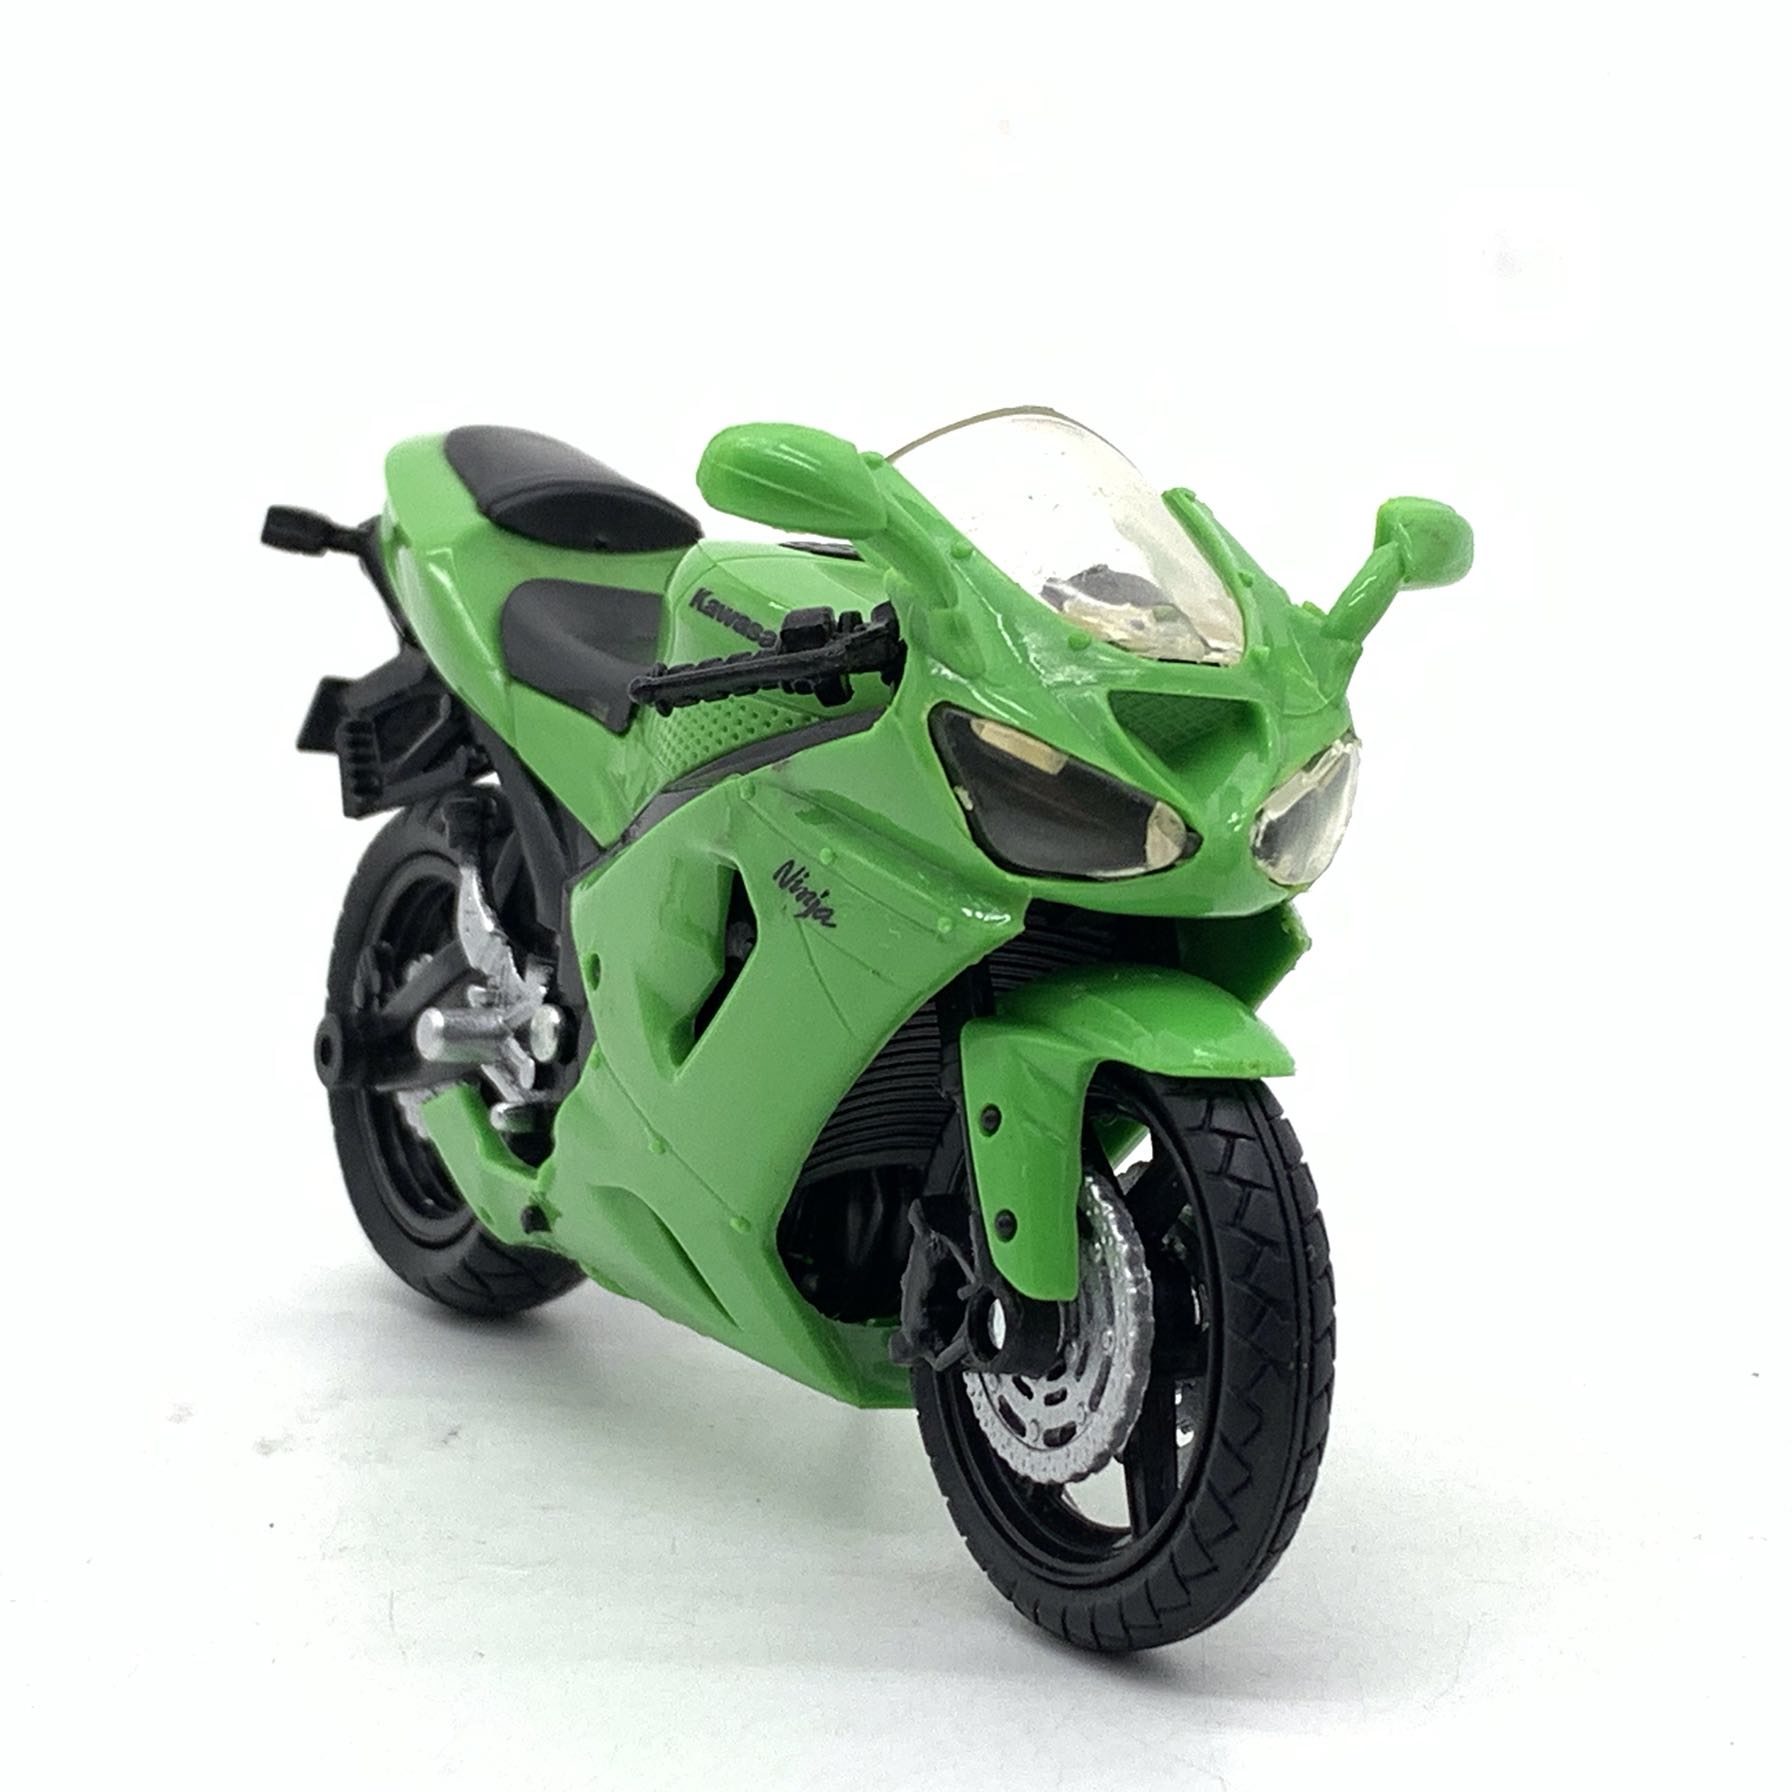 1:18川崎Ninja忍者 摩托车模型 长11cm